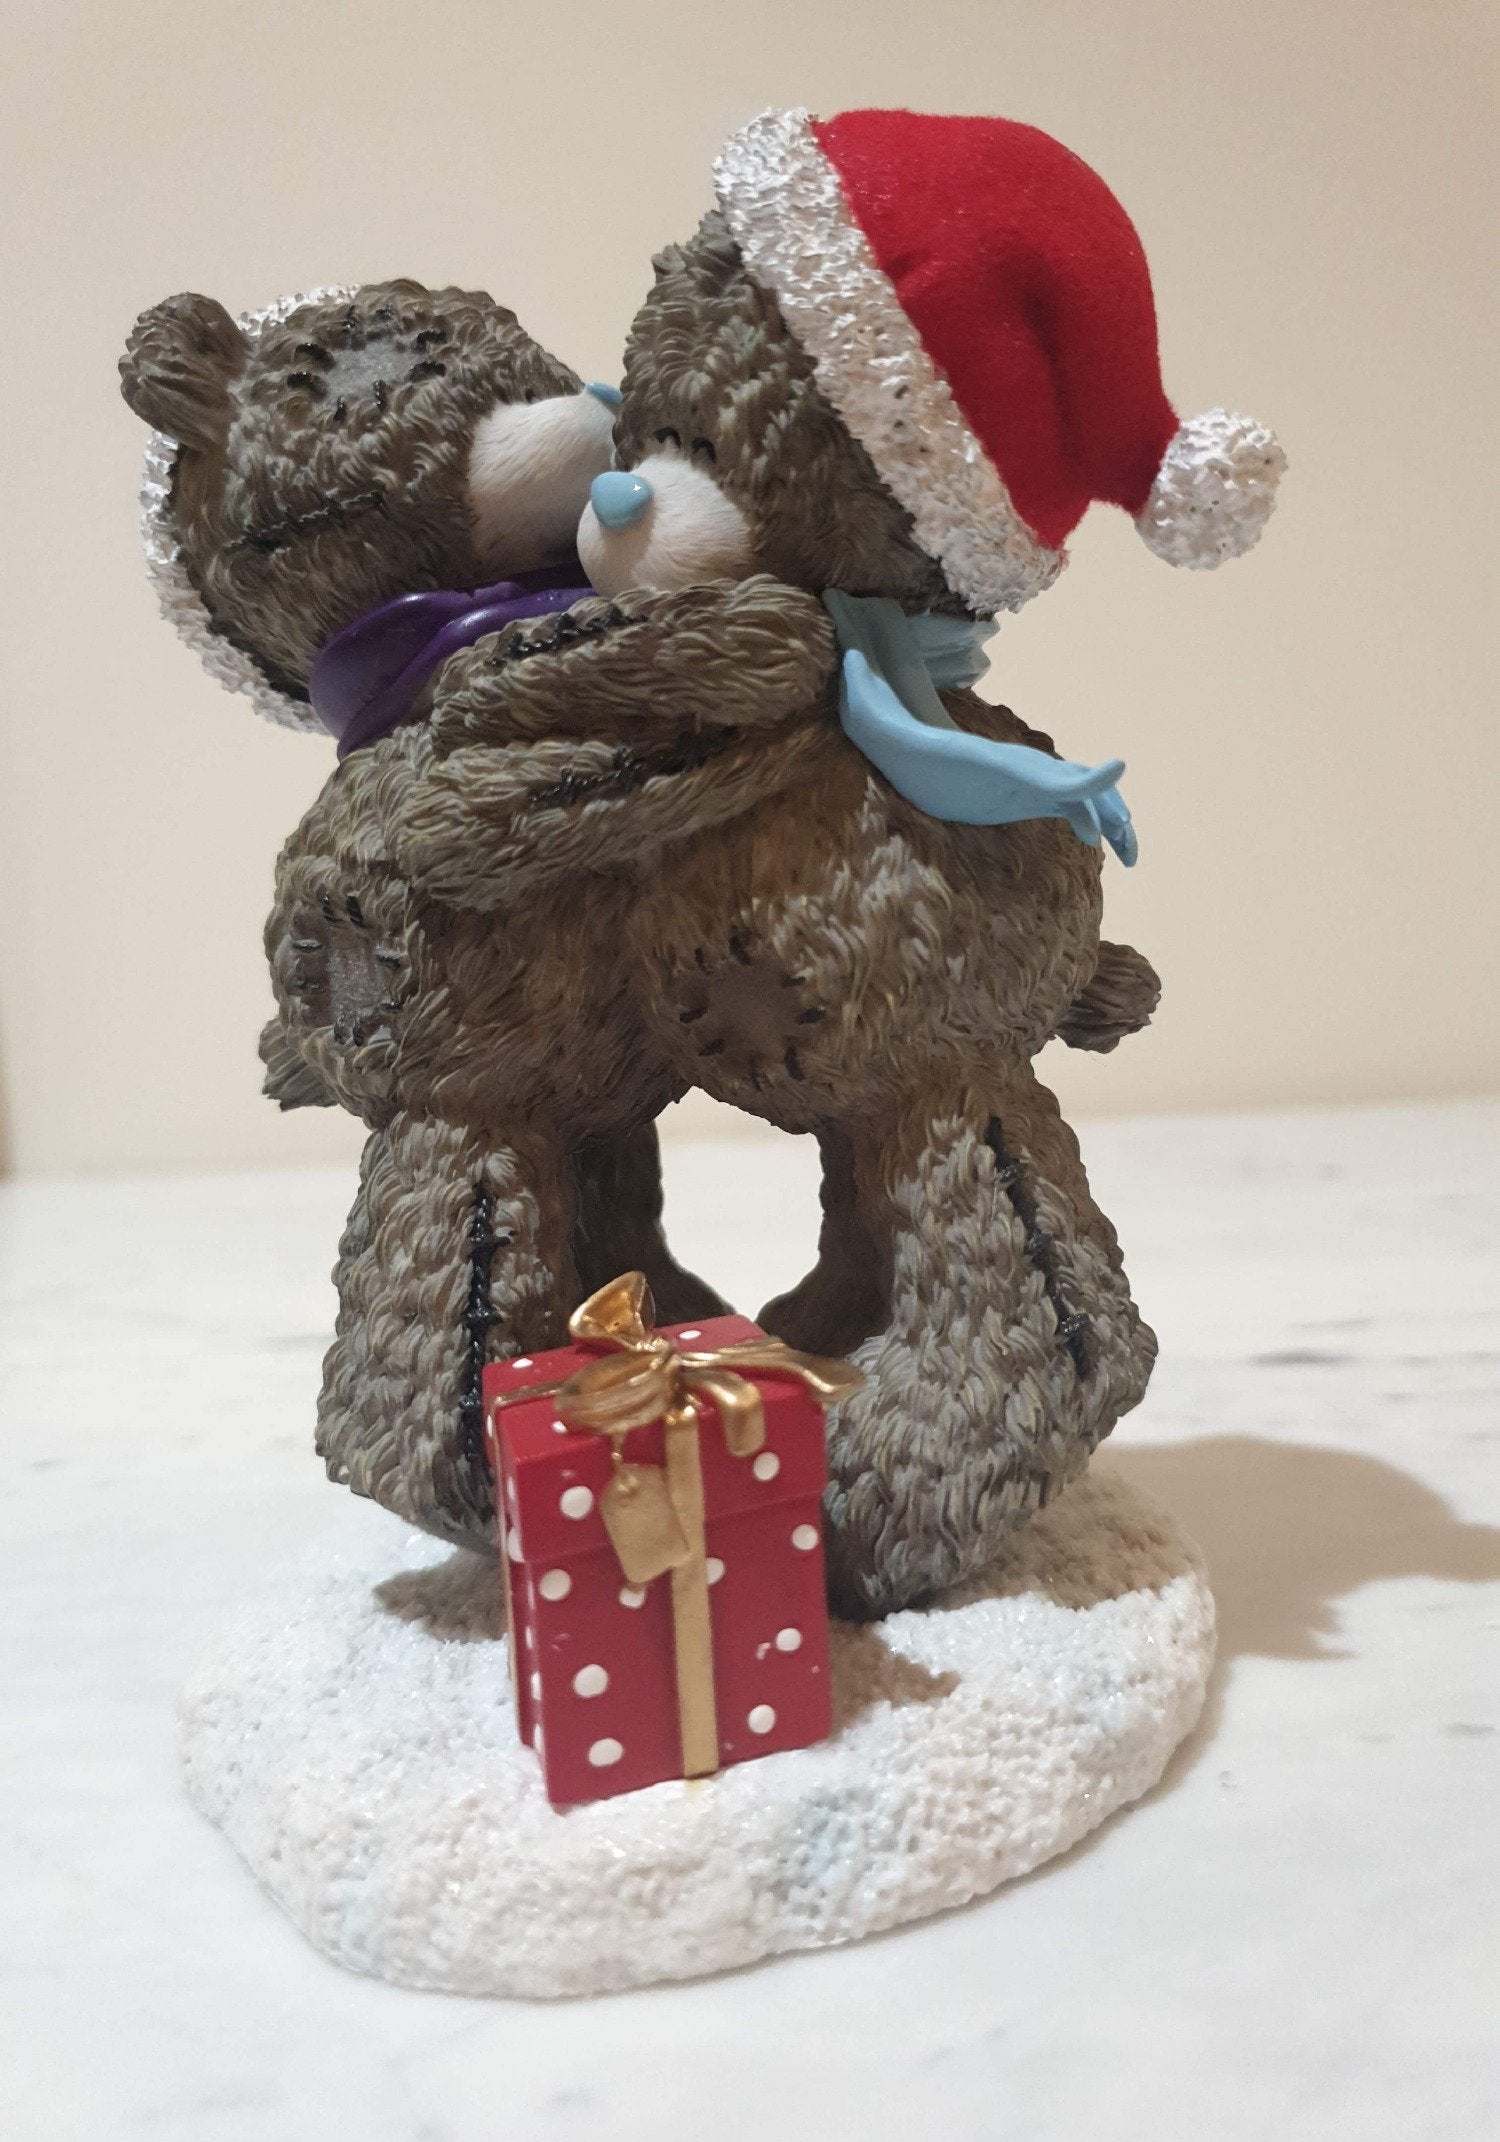 Christmas Gift - Big Hugs Figurine